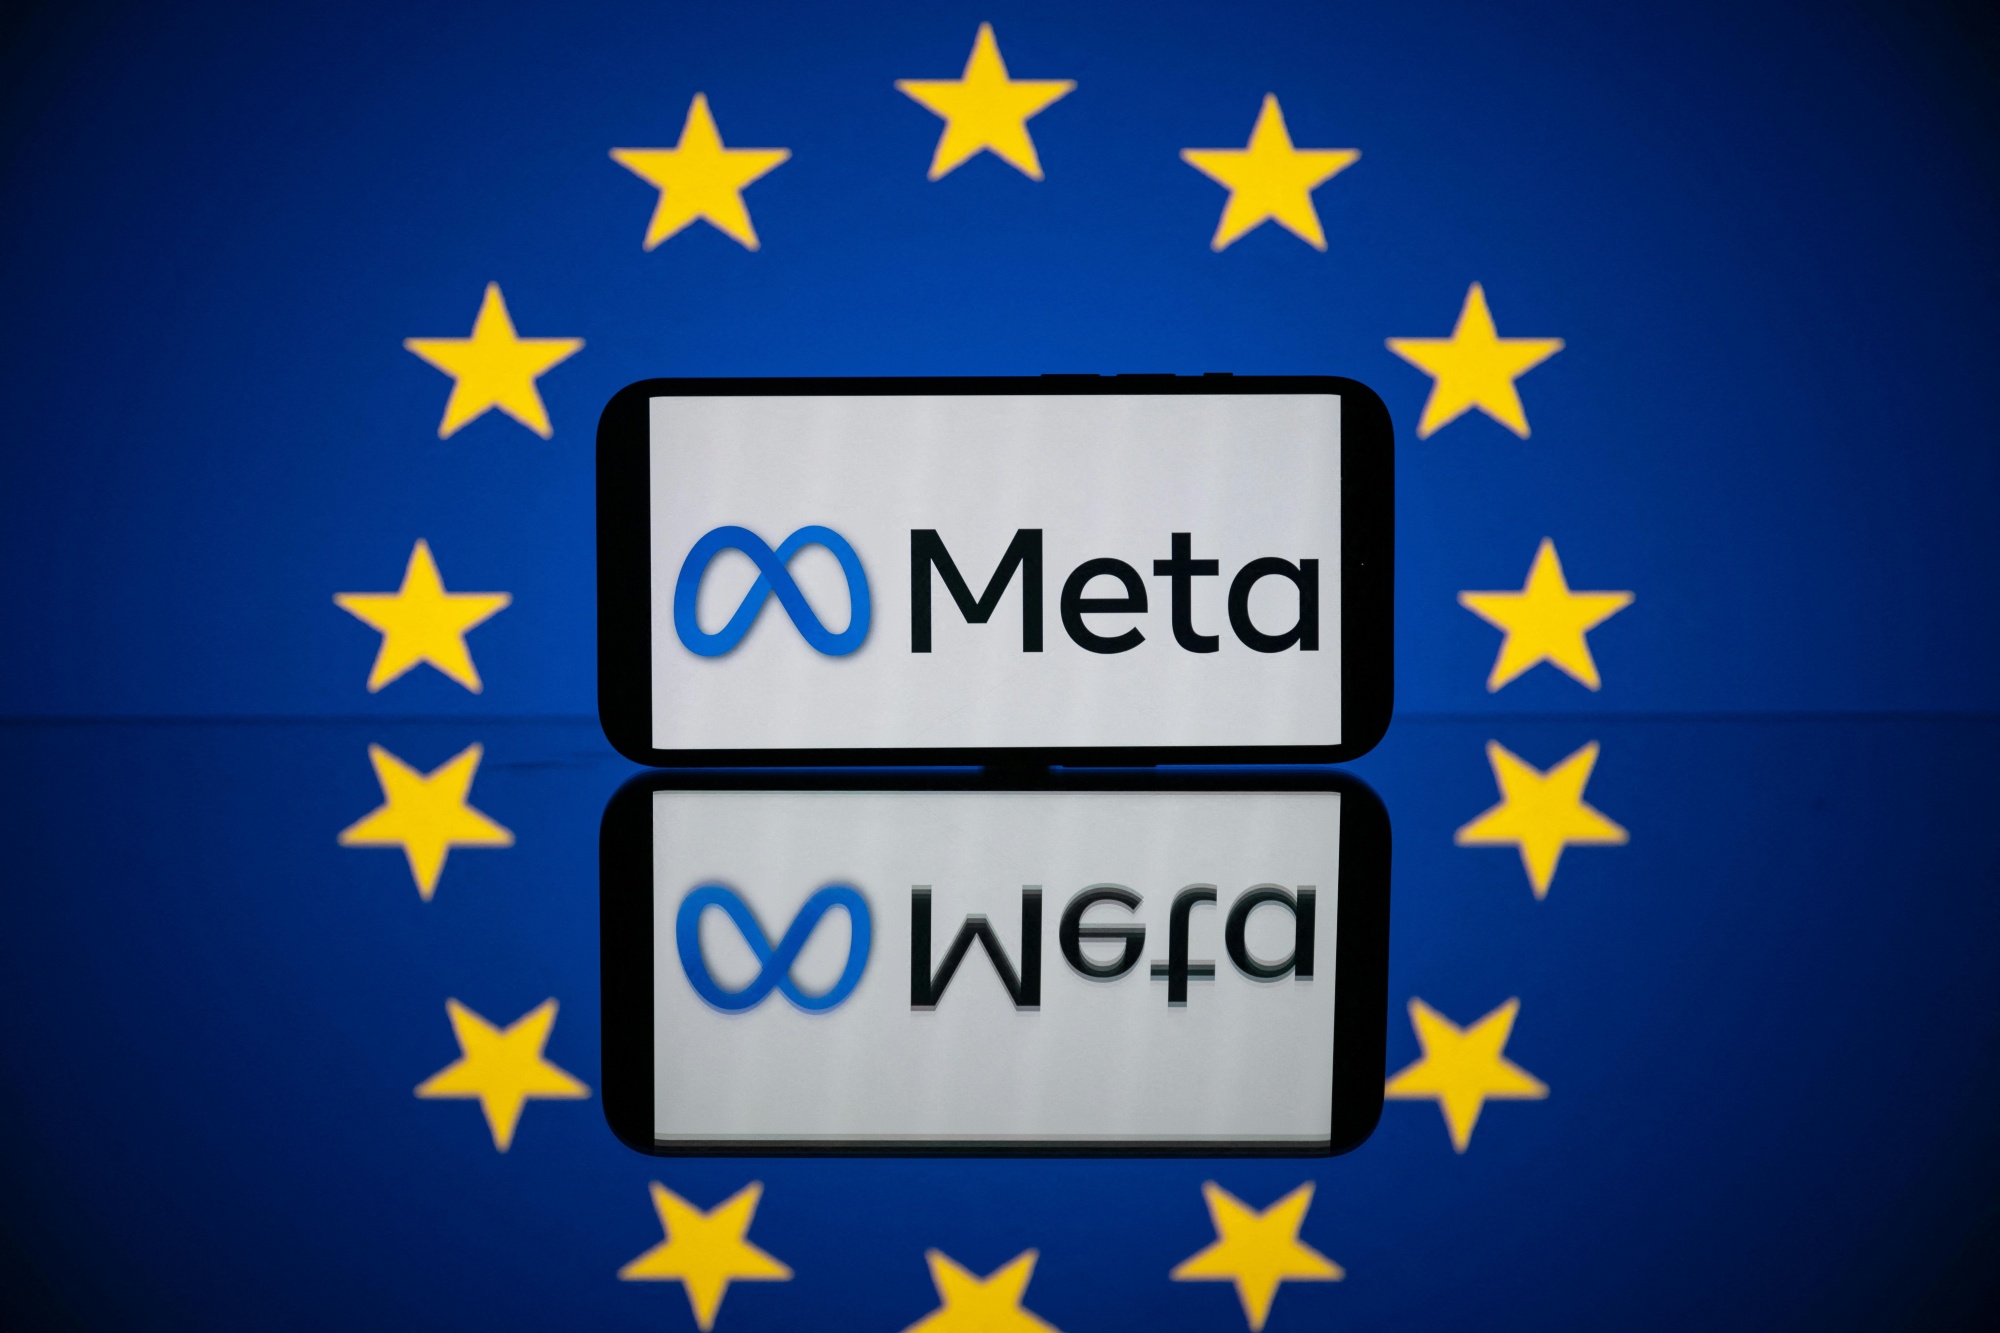 The EU vs. Meta